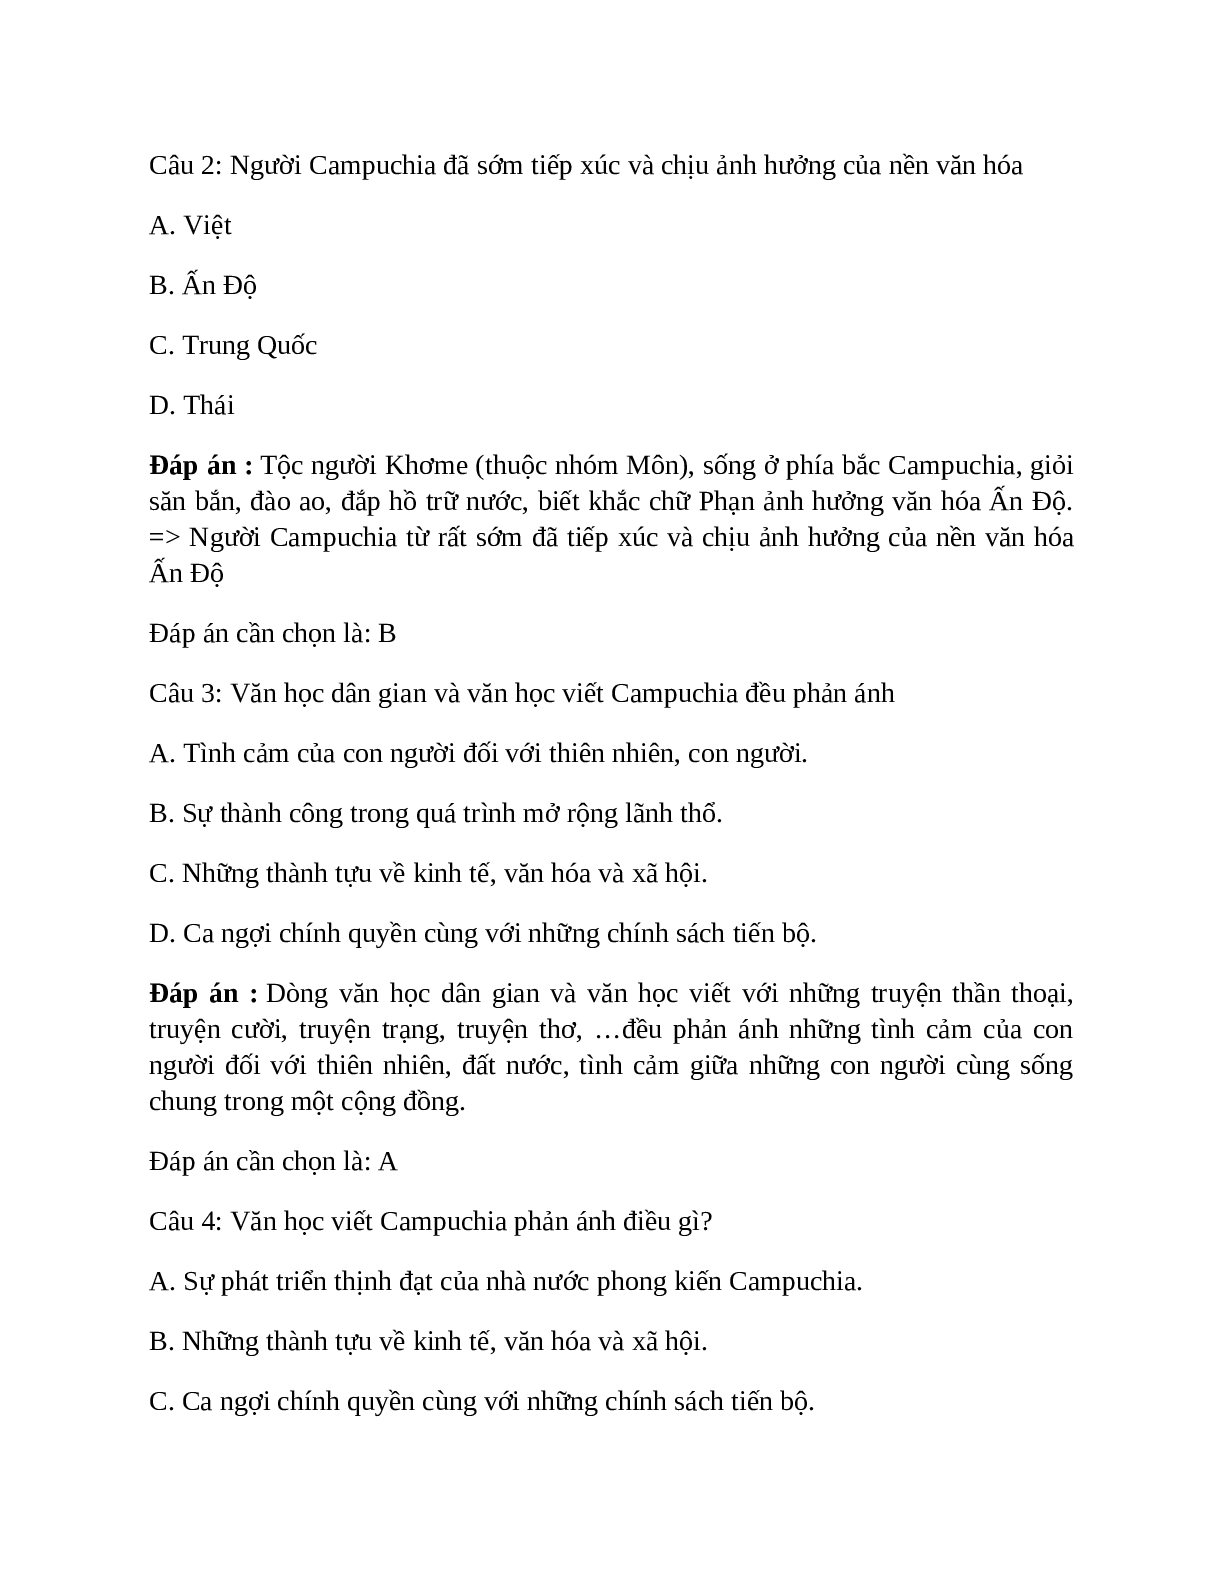 Lịch Sử 10 Bài 9 (Lý thuyết và trắc nghiệm): Vương quốc Cam-pu-chia và Vương quốc Lào (trang 5)